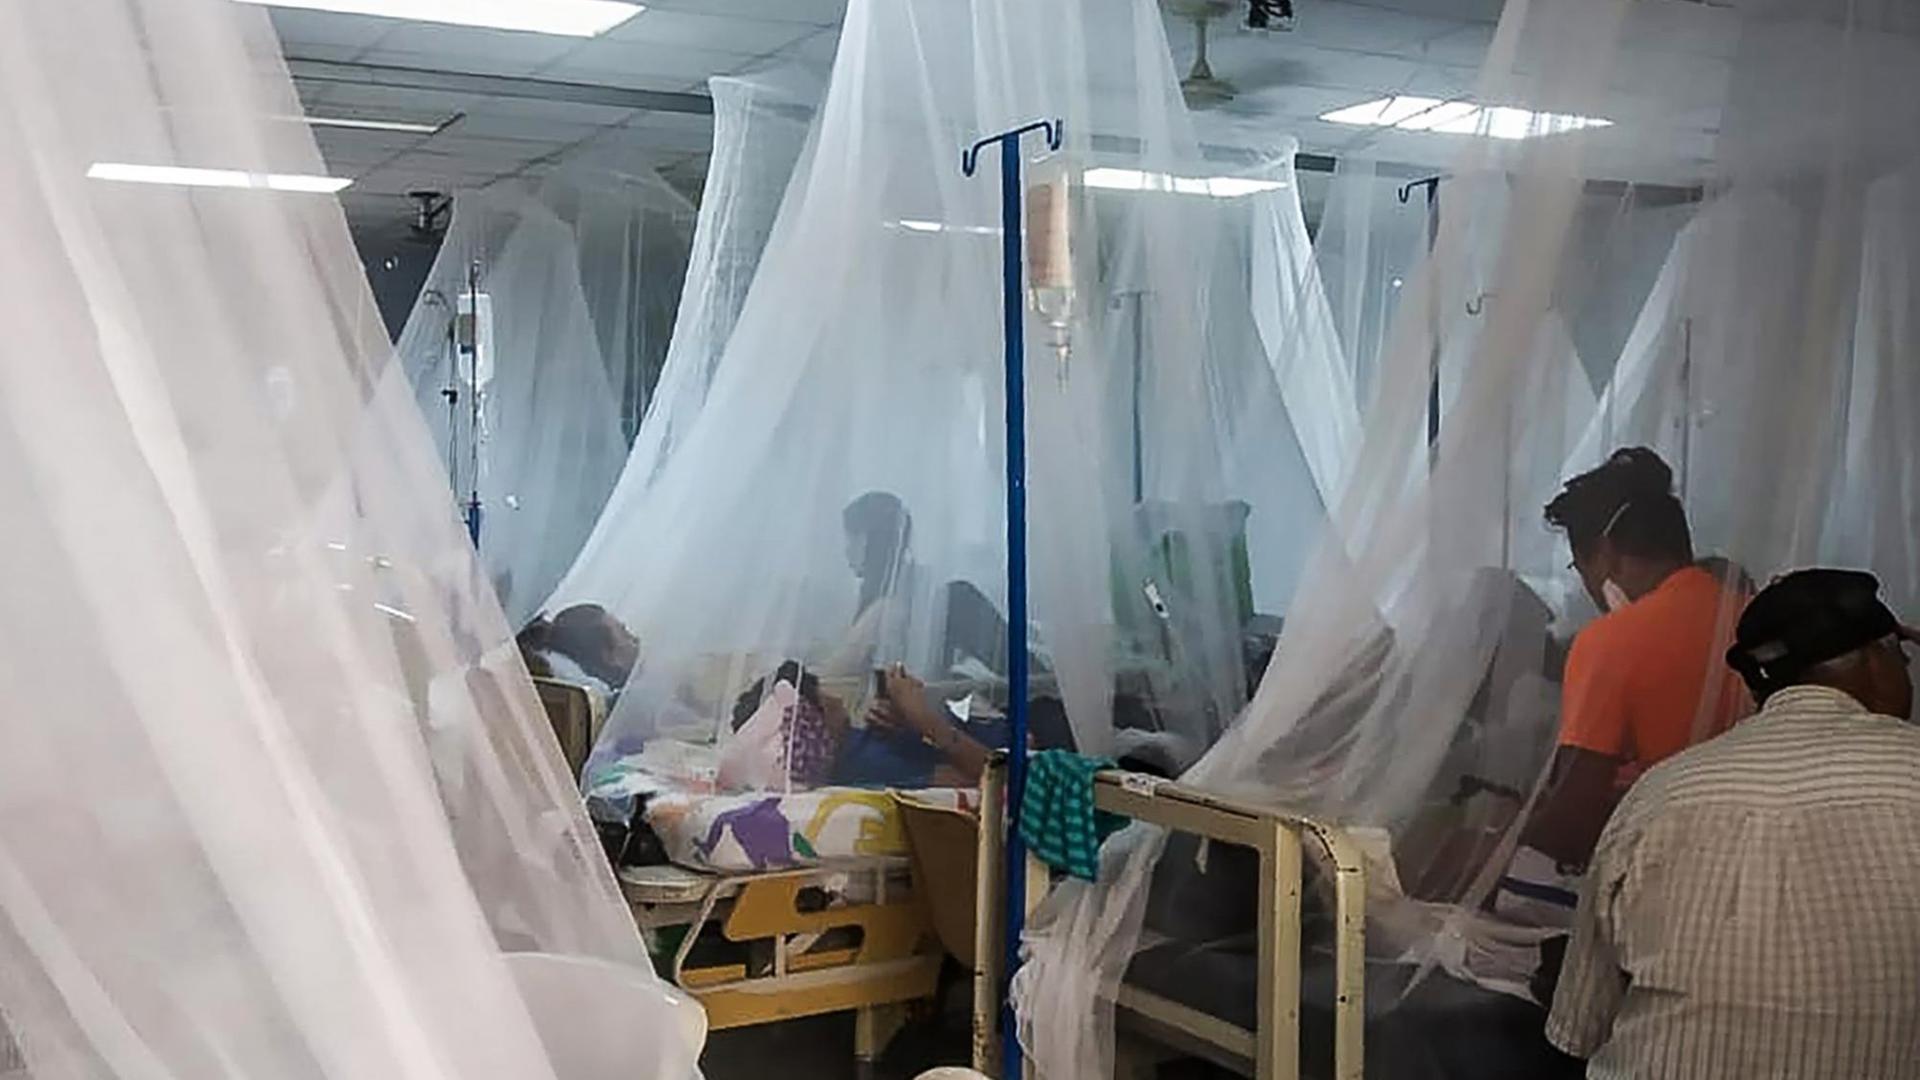 Angehörige sitzen bei Patienten, die an Dengue-Fieber erkrankt sind. Die Betten sind mit Mückennetzen geschützt.